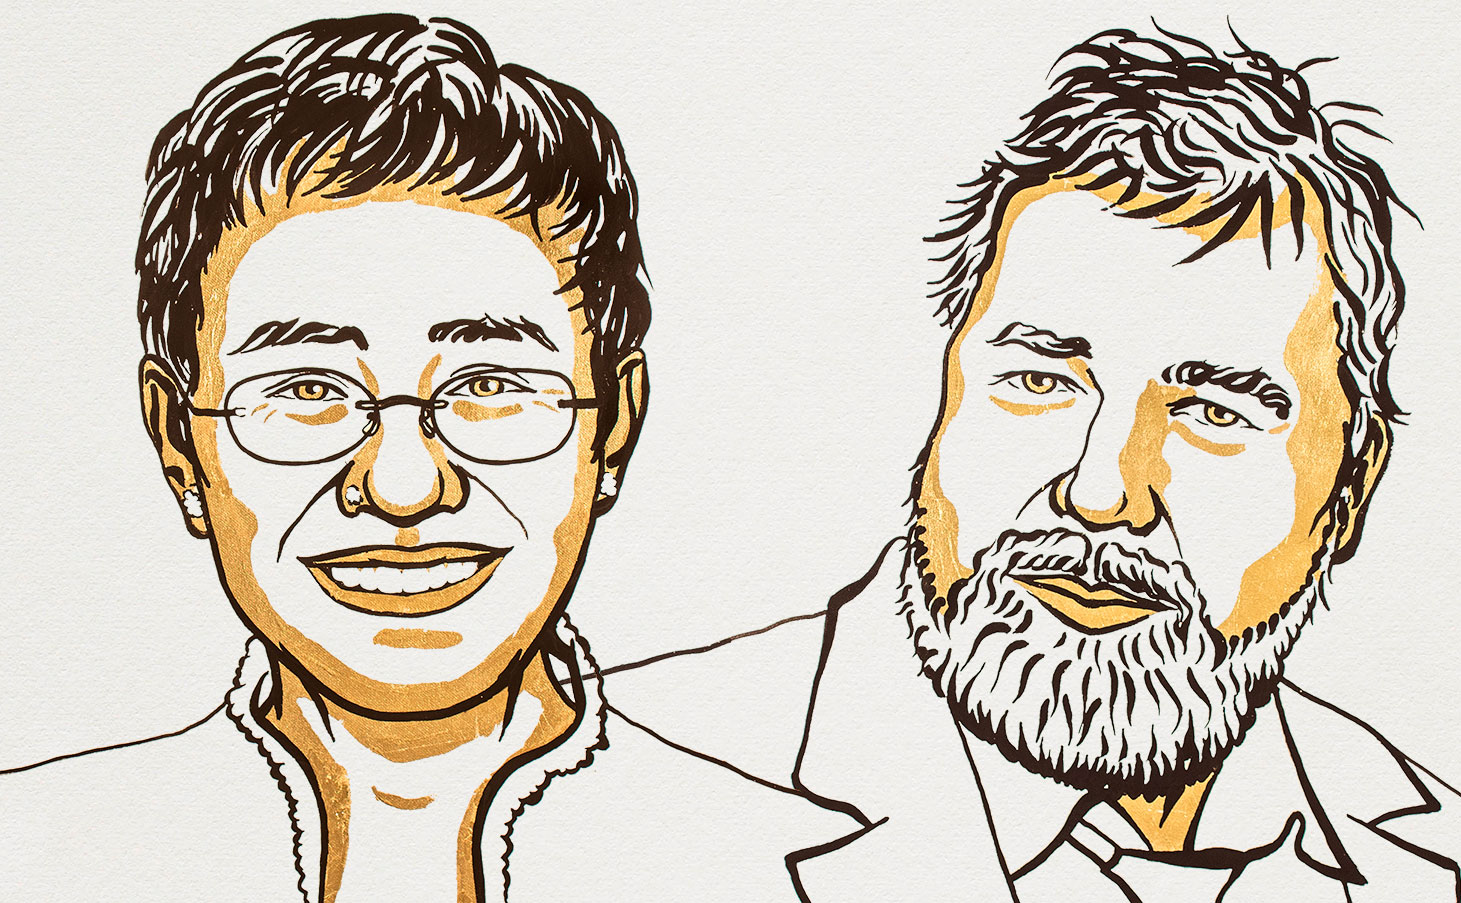 Ilustração dos jornalistas Maria Ressa e Dmitry Andreyevich ganhadores do prêmio Nobel